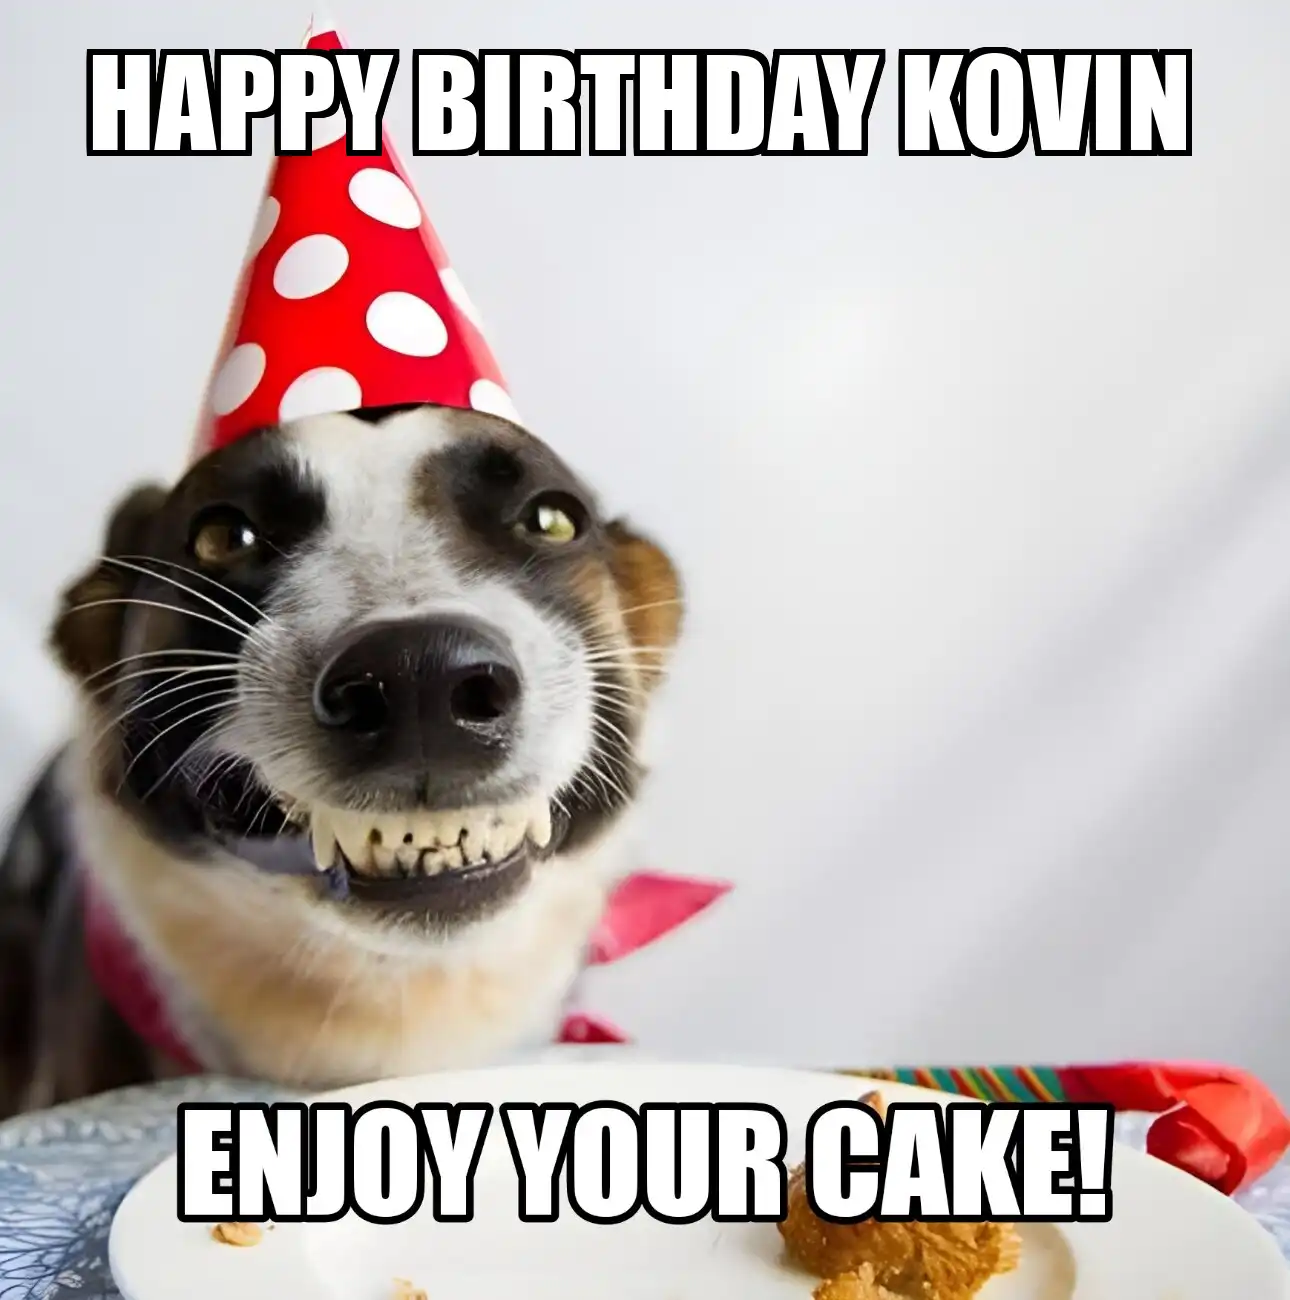 Happy Birthday Kovin Enjoy Your Cake Dog Meme